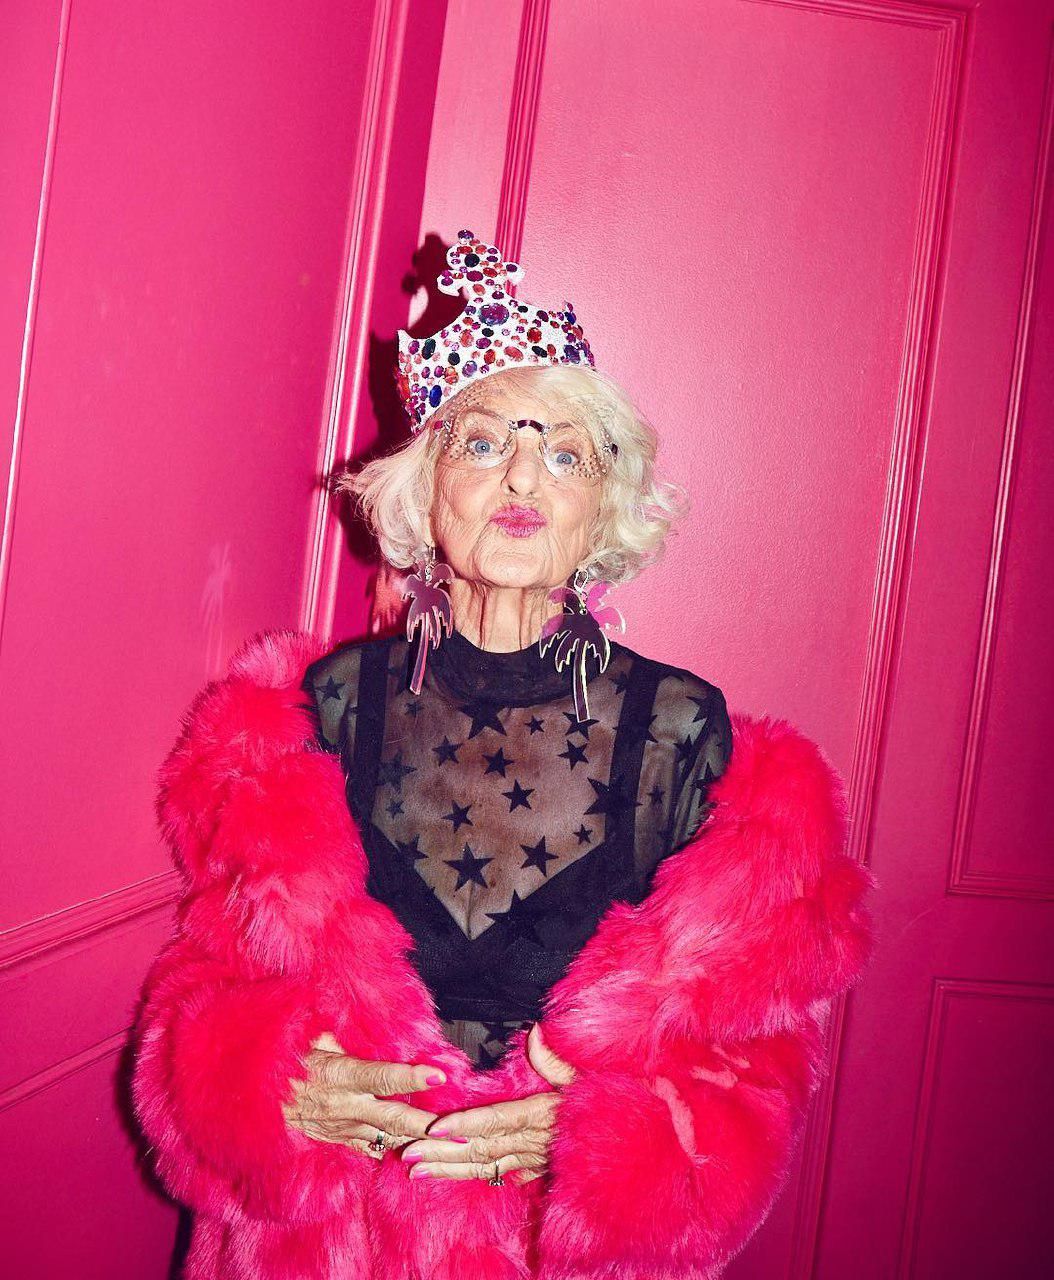 Модная 91-летняя пенсионерка взорвала Инстаграм стильными образами (фото)